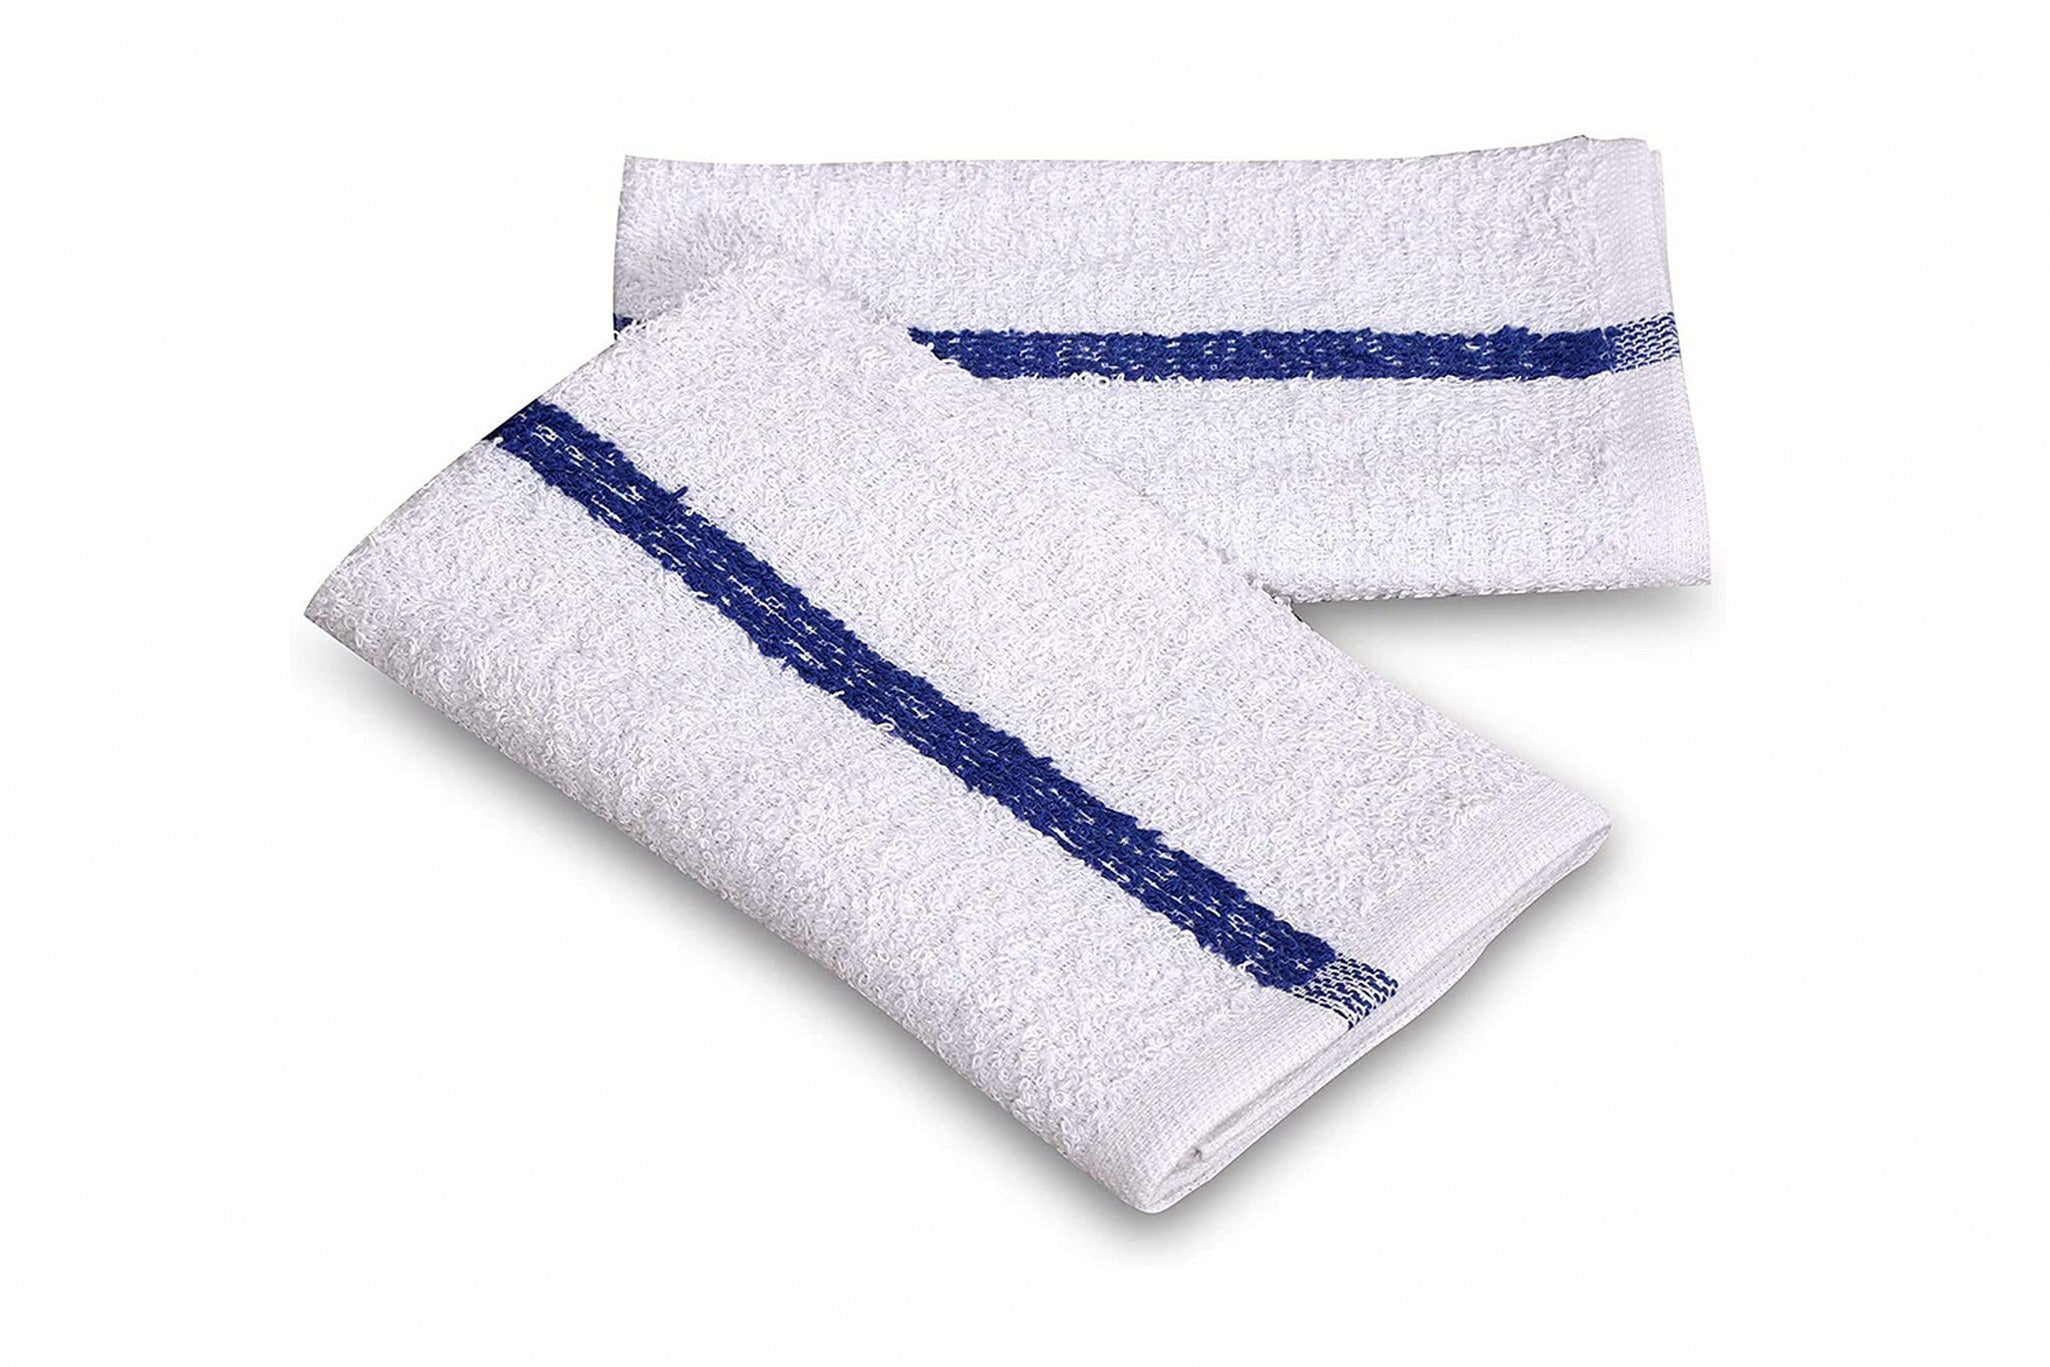 Mouind [8 Pack] Premium Dish Towels for Kitchen, Bulk Cotton